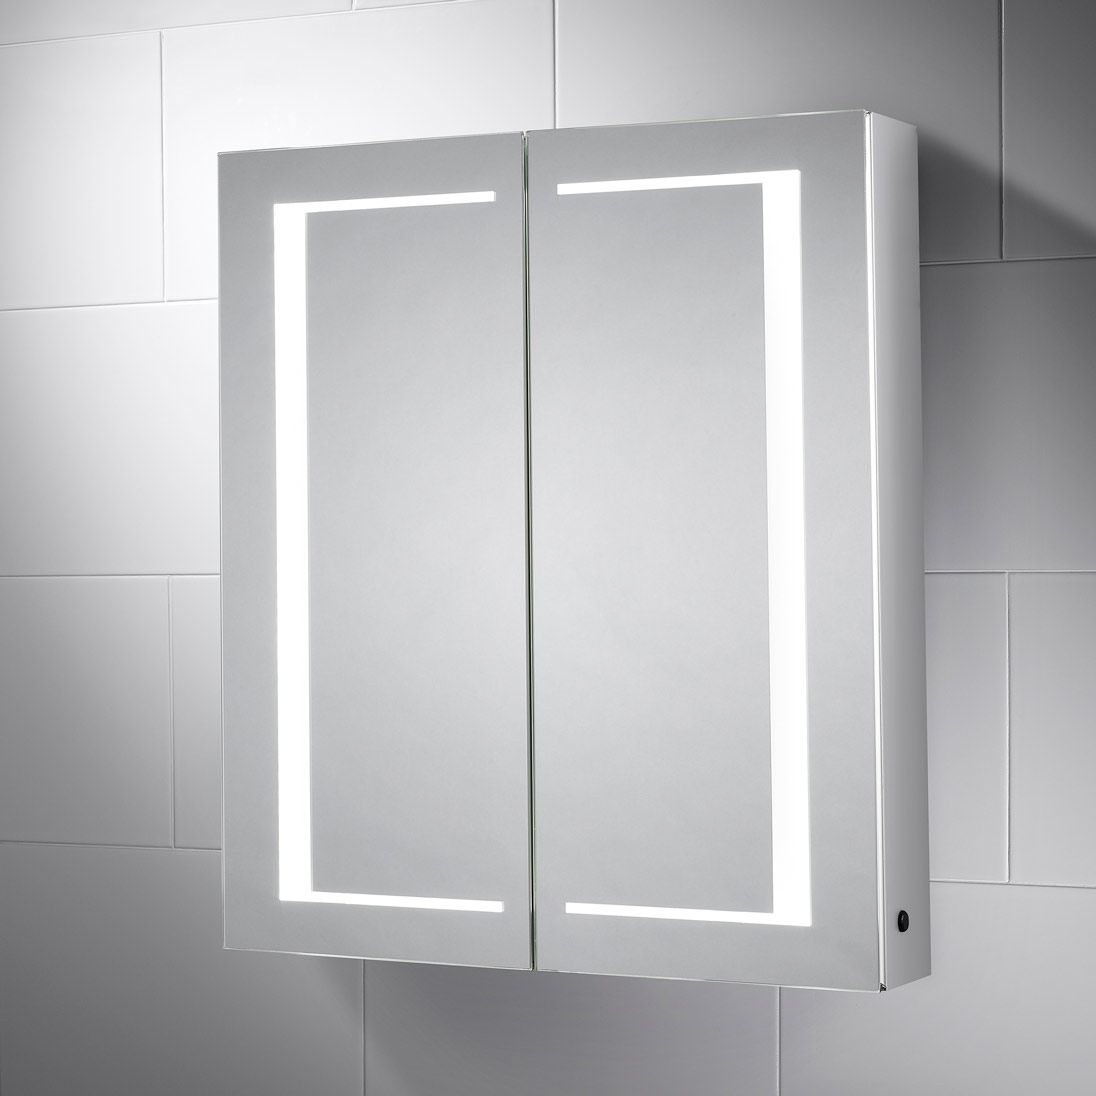 Nimbus Led Illuminated Double Sided Bathroom Cabinet Mirror Pebble with size 1096 X 1096